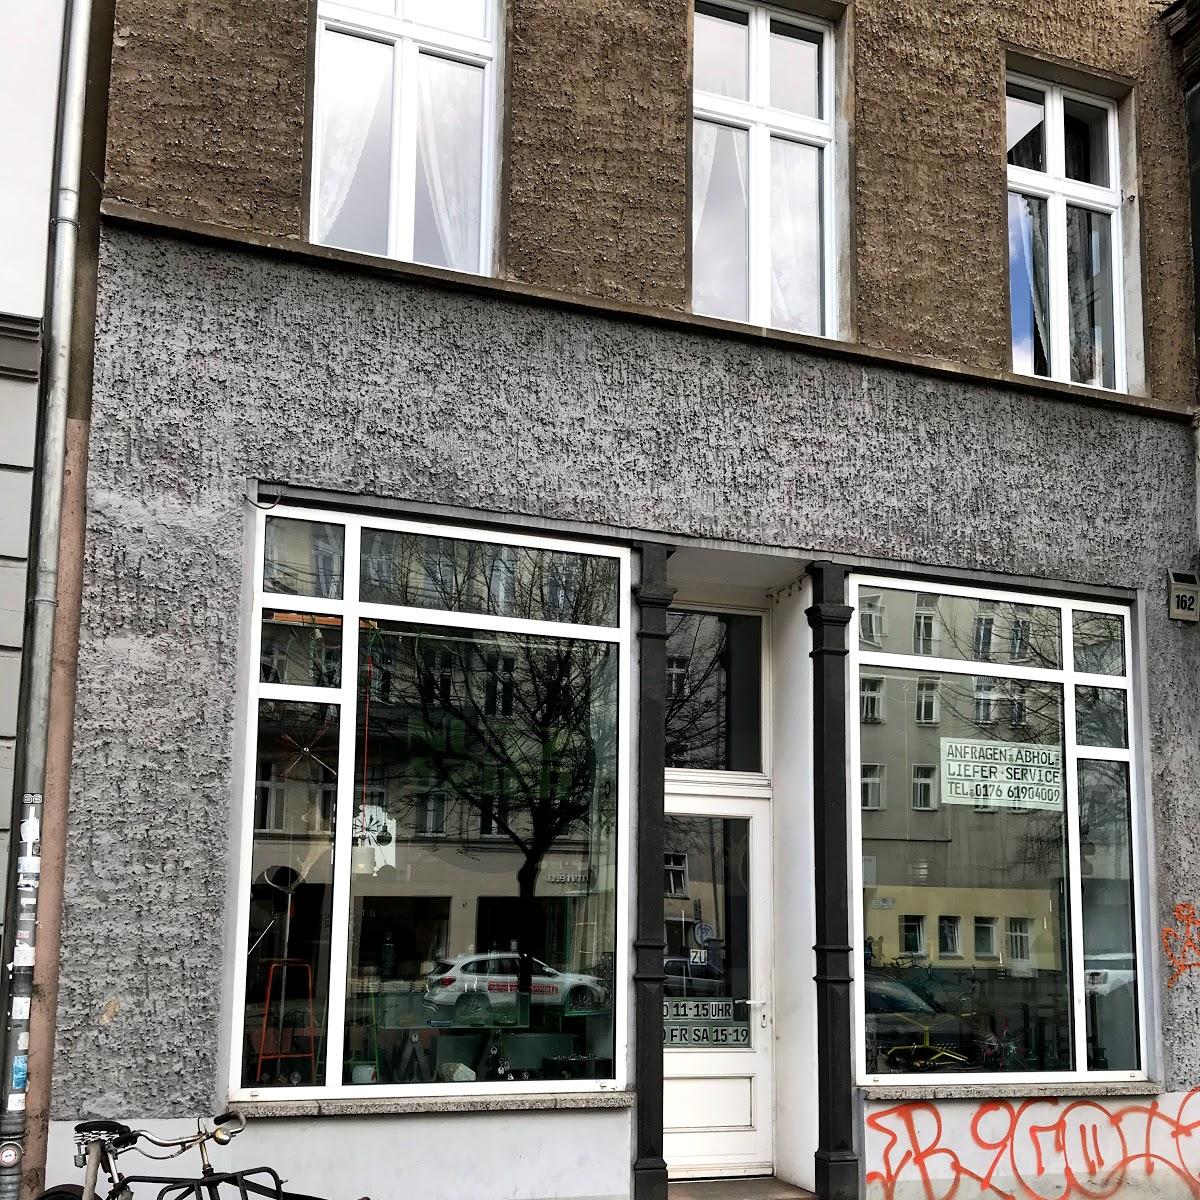 Restaurant "DSM Store & Showroom" in Berlin